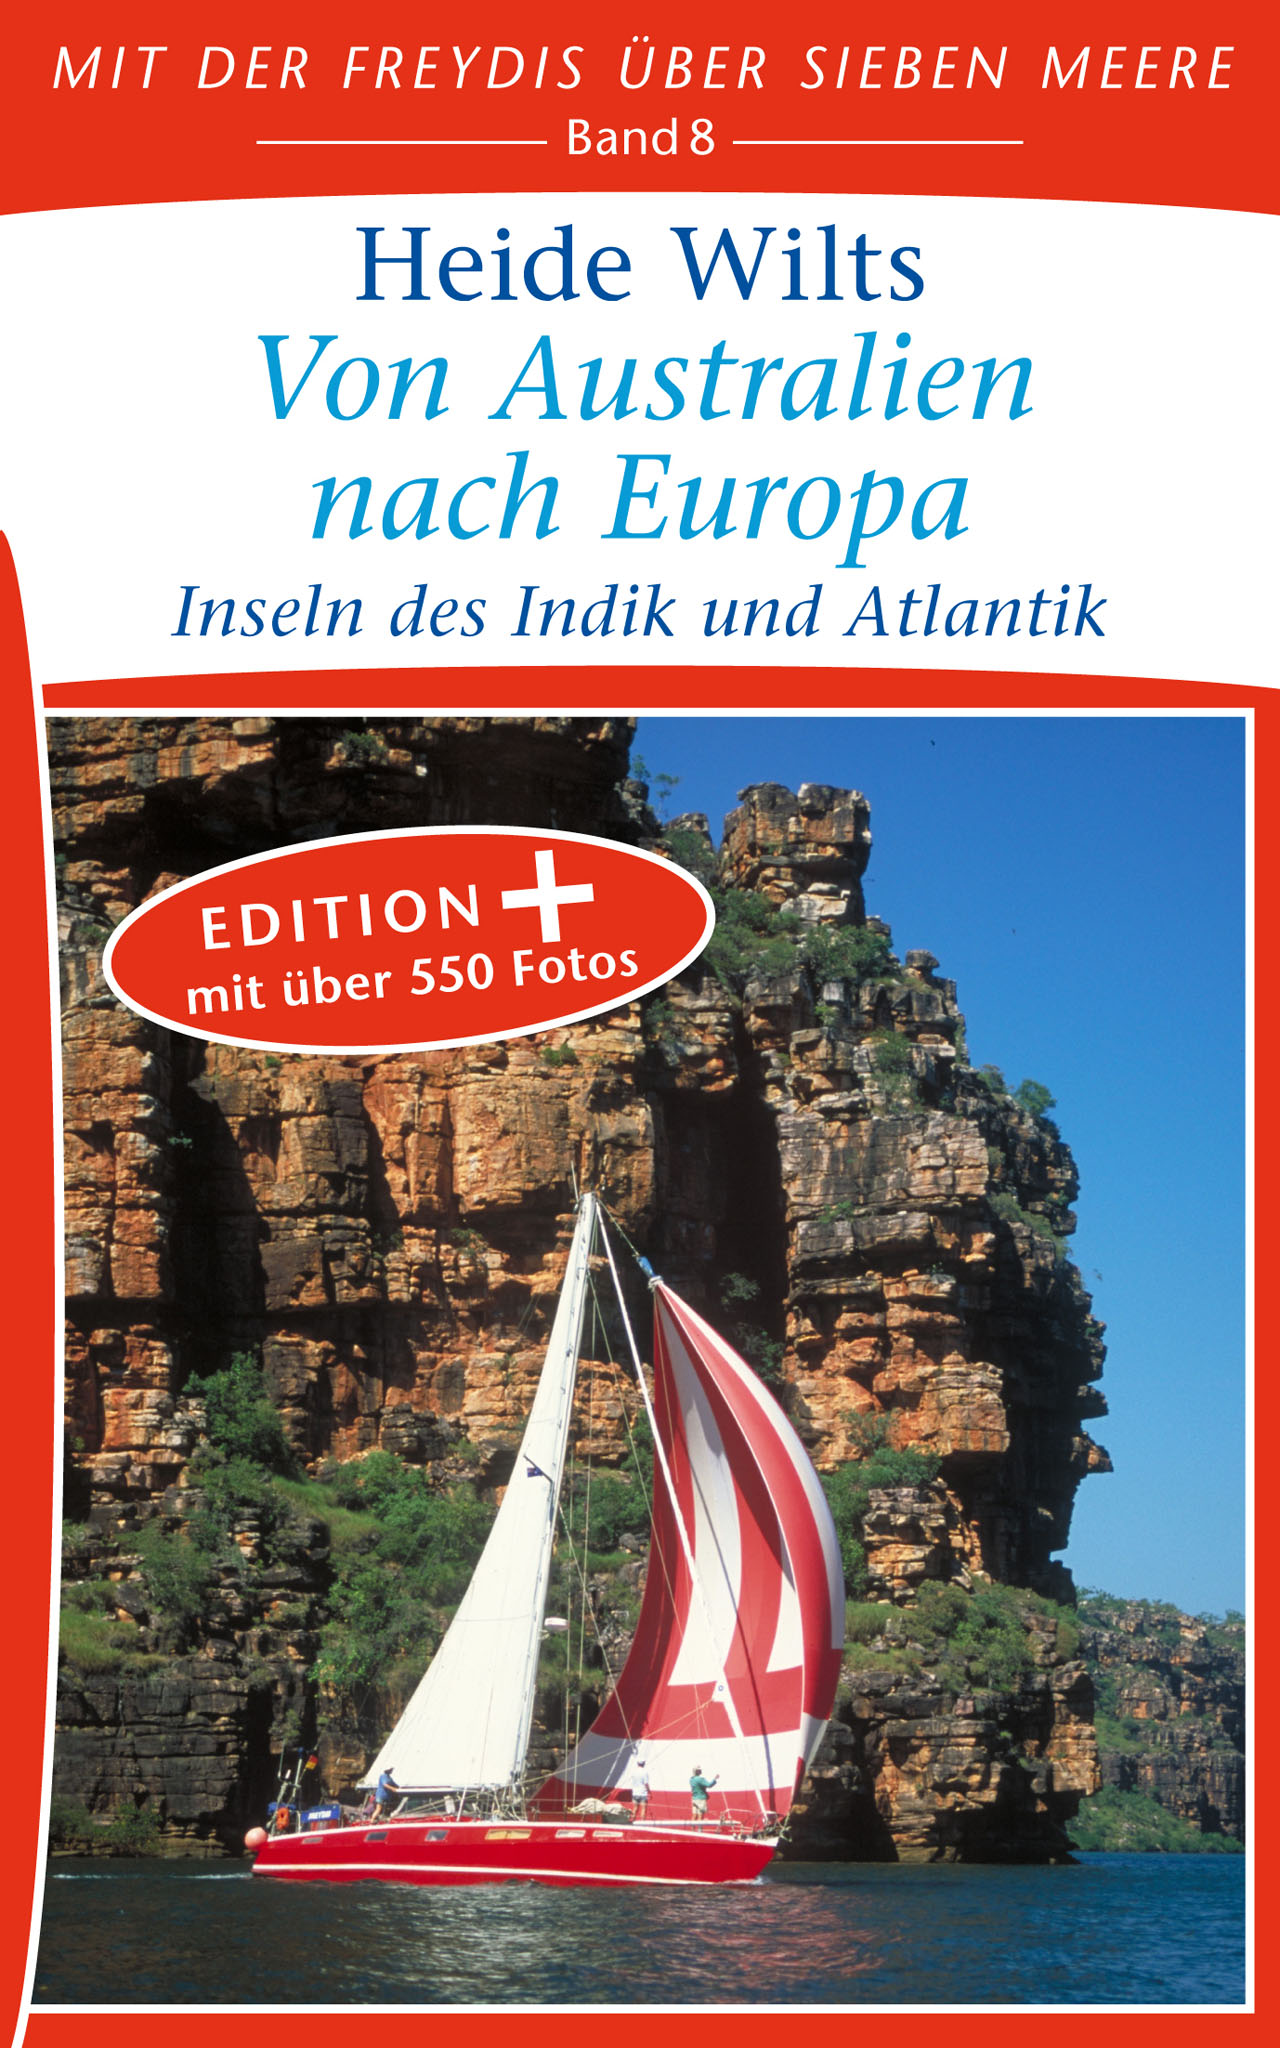 Buch: Von Australien nach Europa (Band 8)